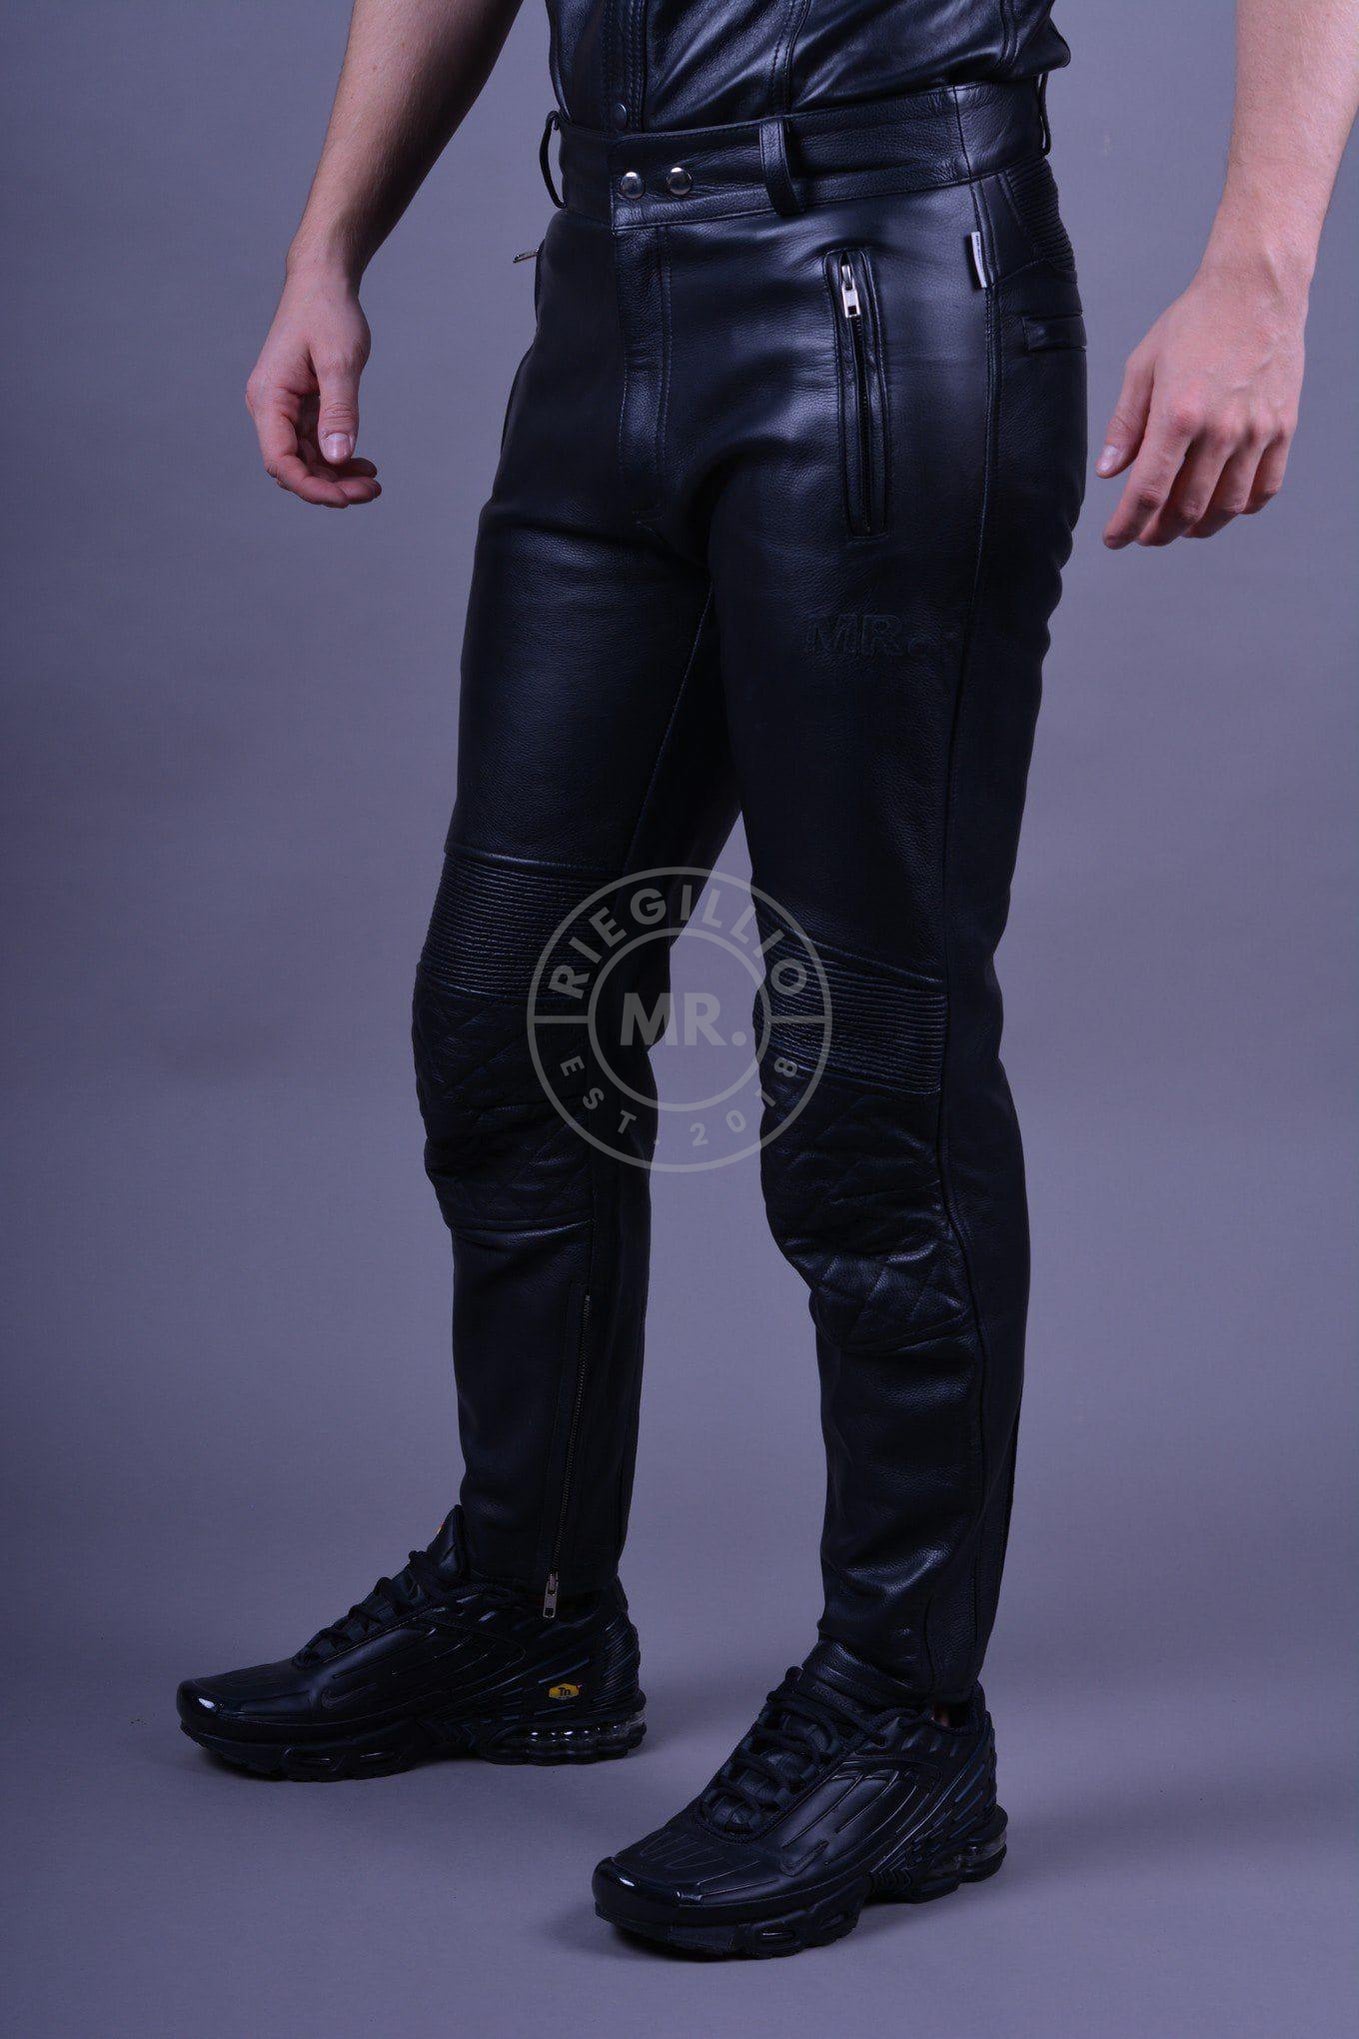 Black Leather Motorbike Pants at MR. Riegillio